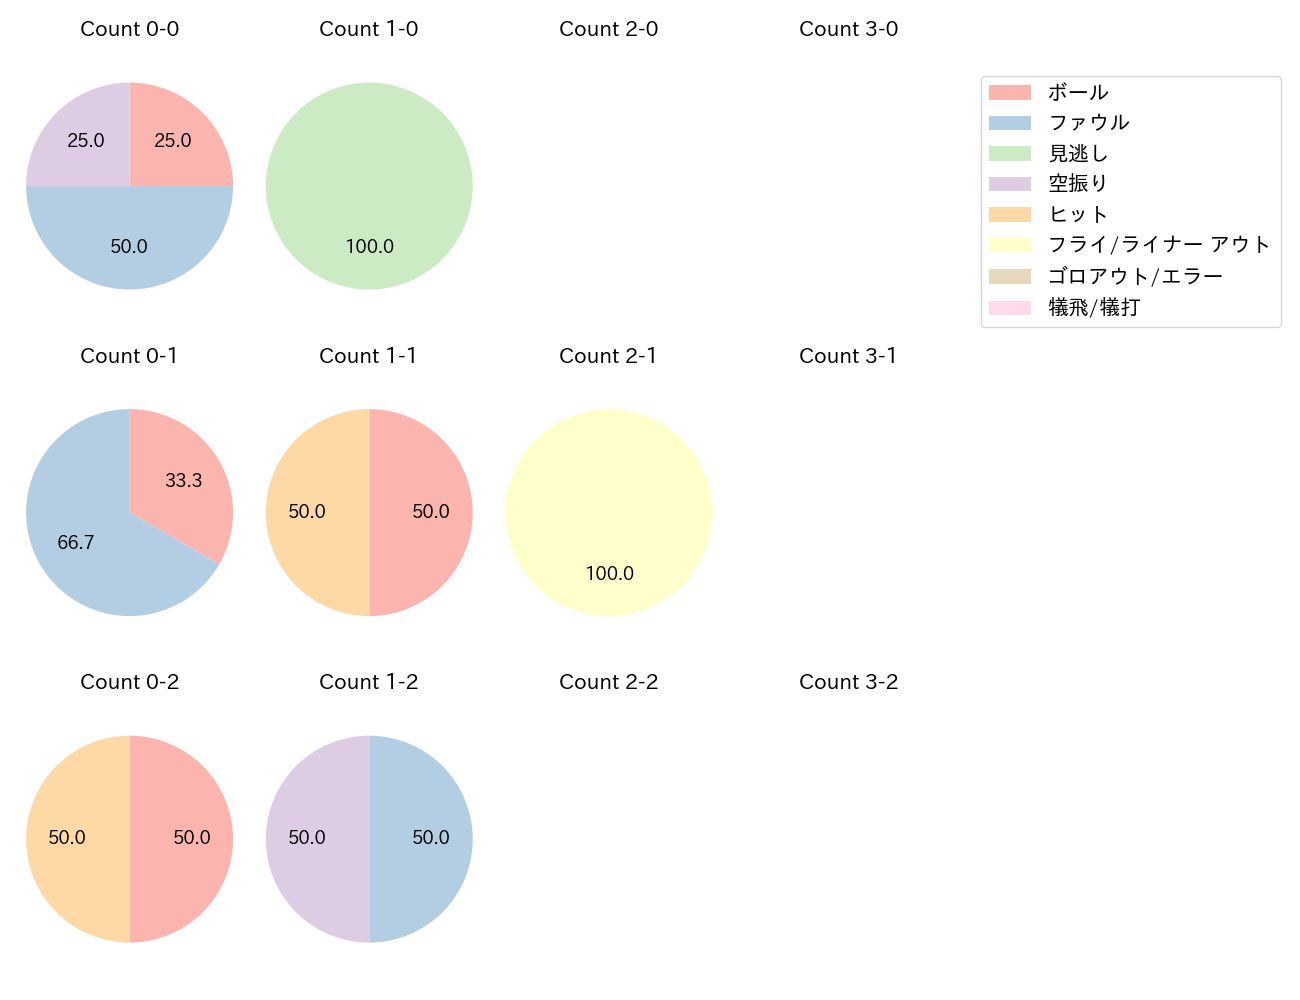 佐藤 輝明の球数分布(2023年3月)